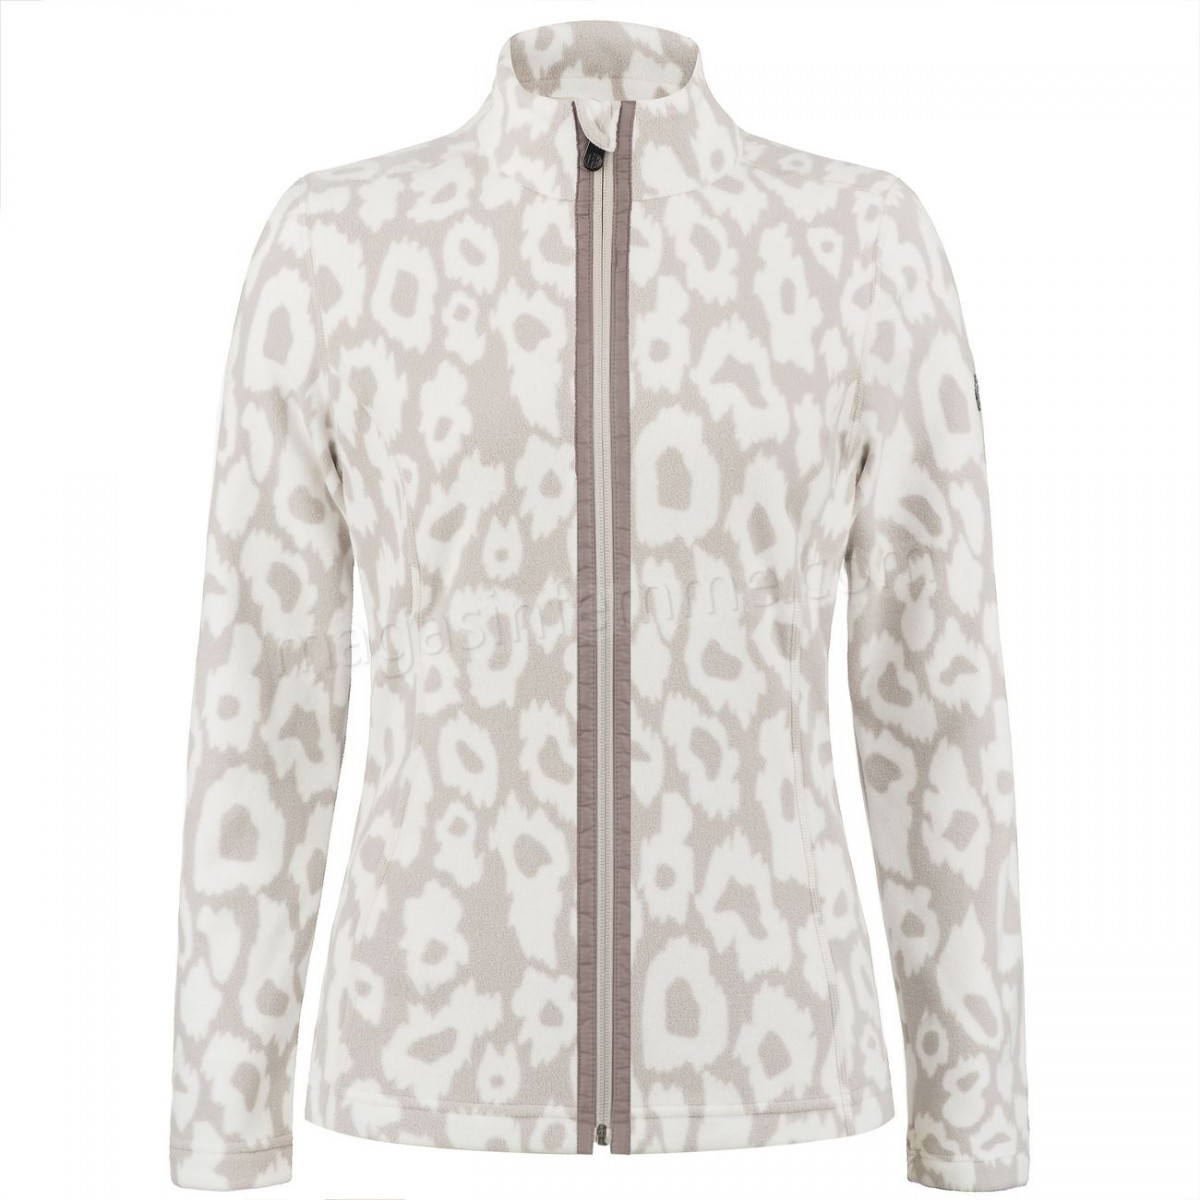 Poivre Blanc-Sports d'hiver femme POIVRE BLANC Veste Polaire Poivre Blanc Fleece Jacket 1500 Panther Grey Femme en solde - -1